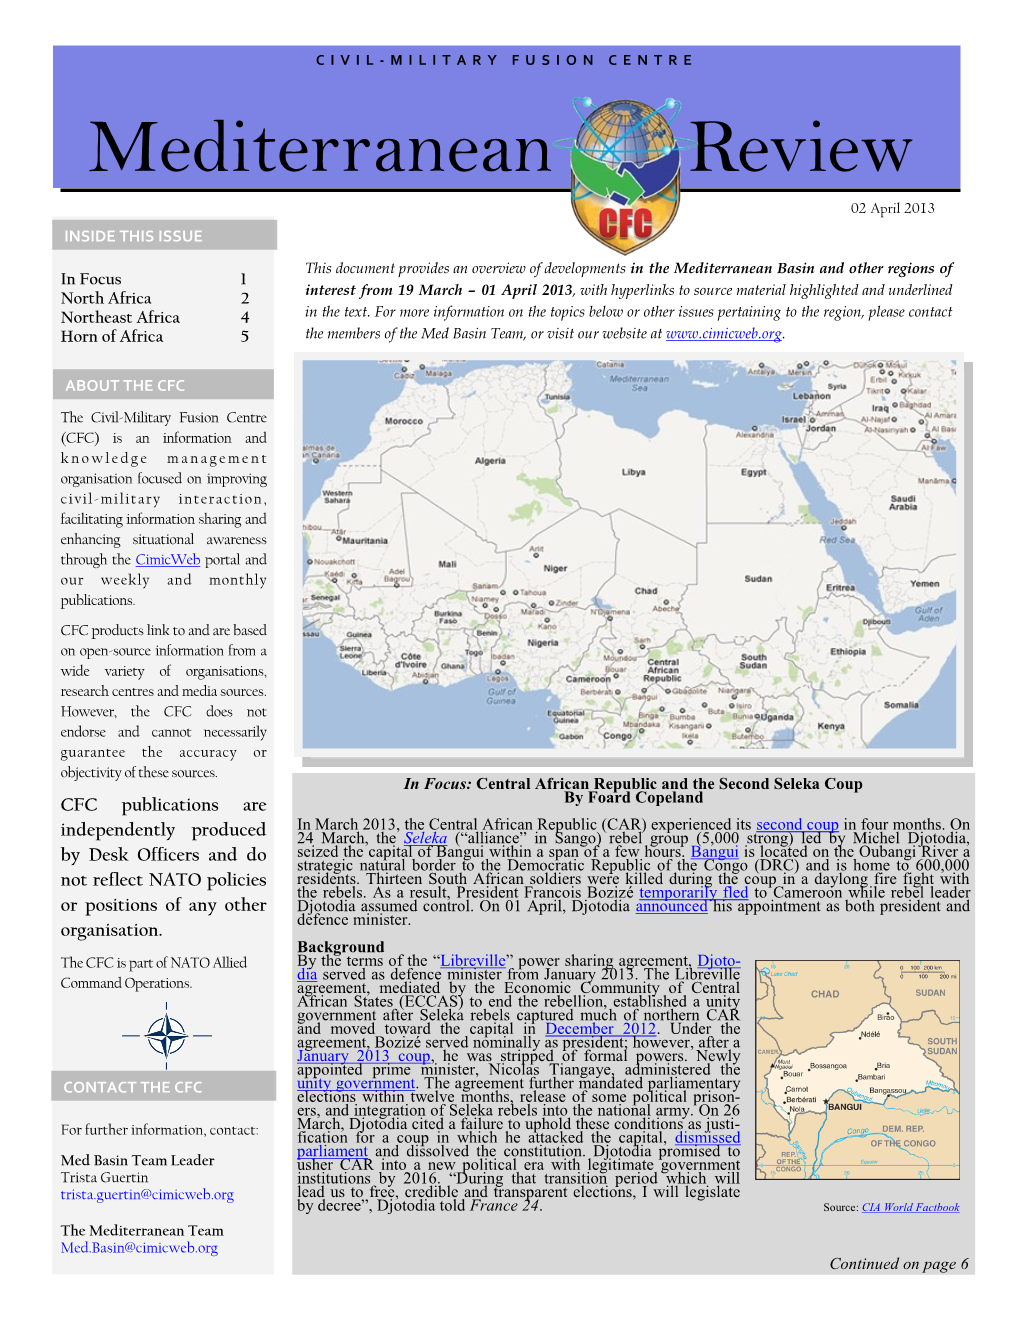 Mediterranean Basin Review